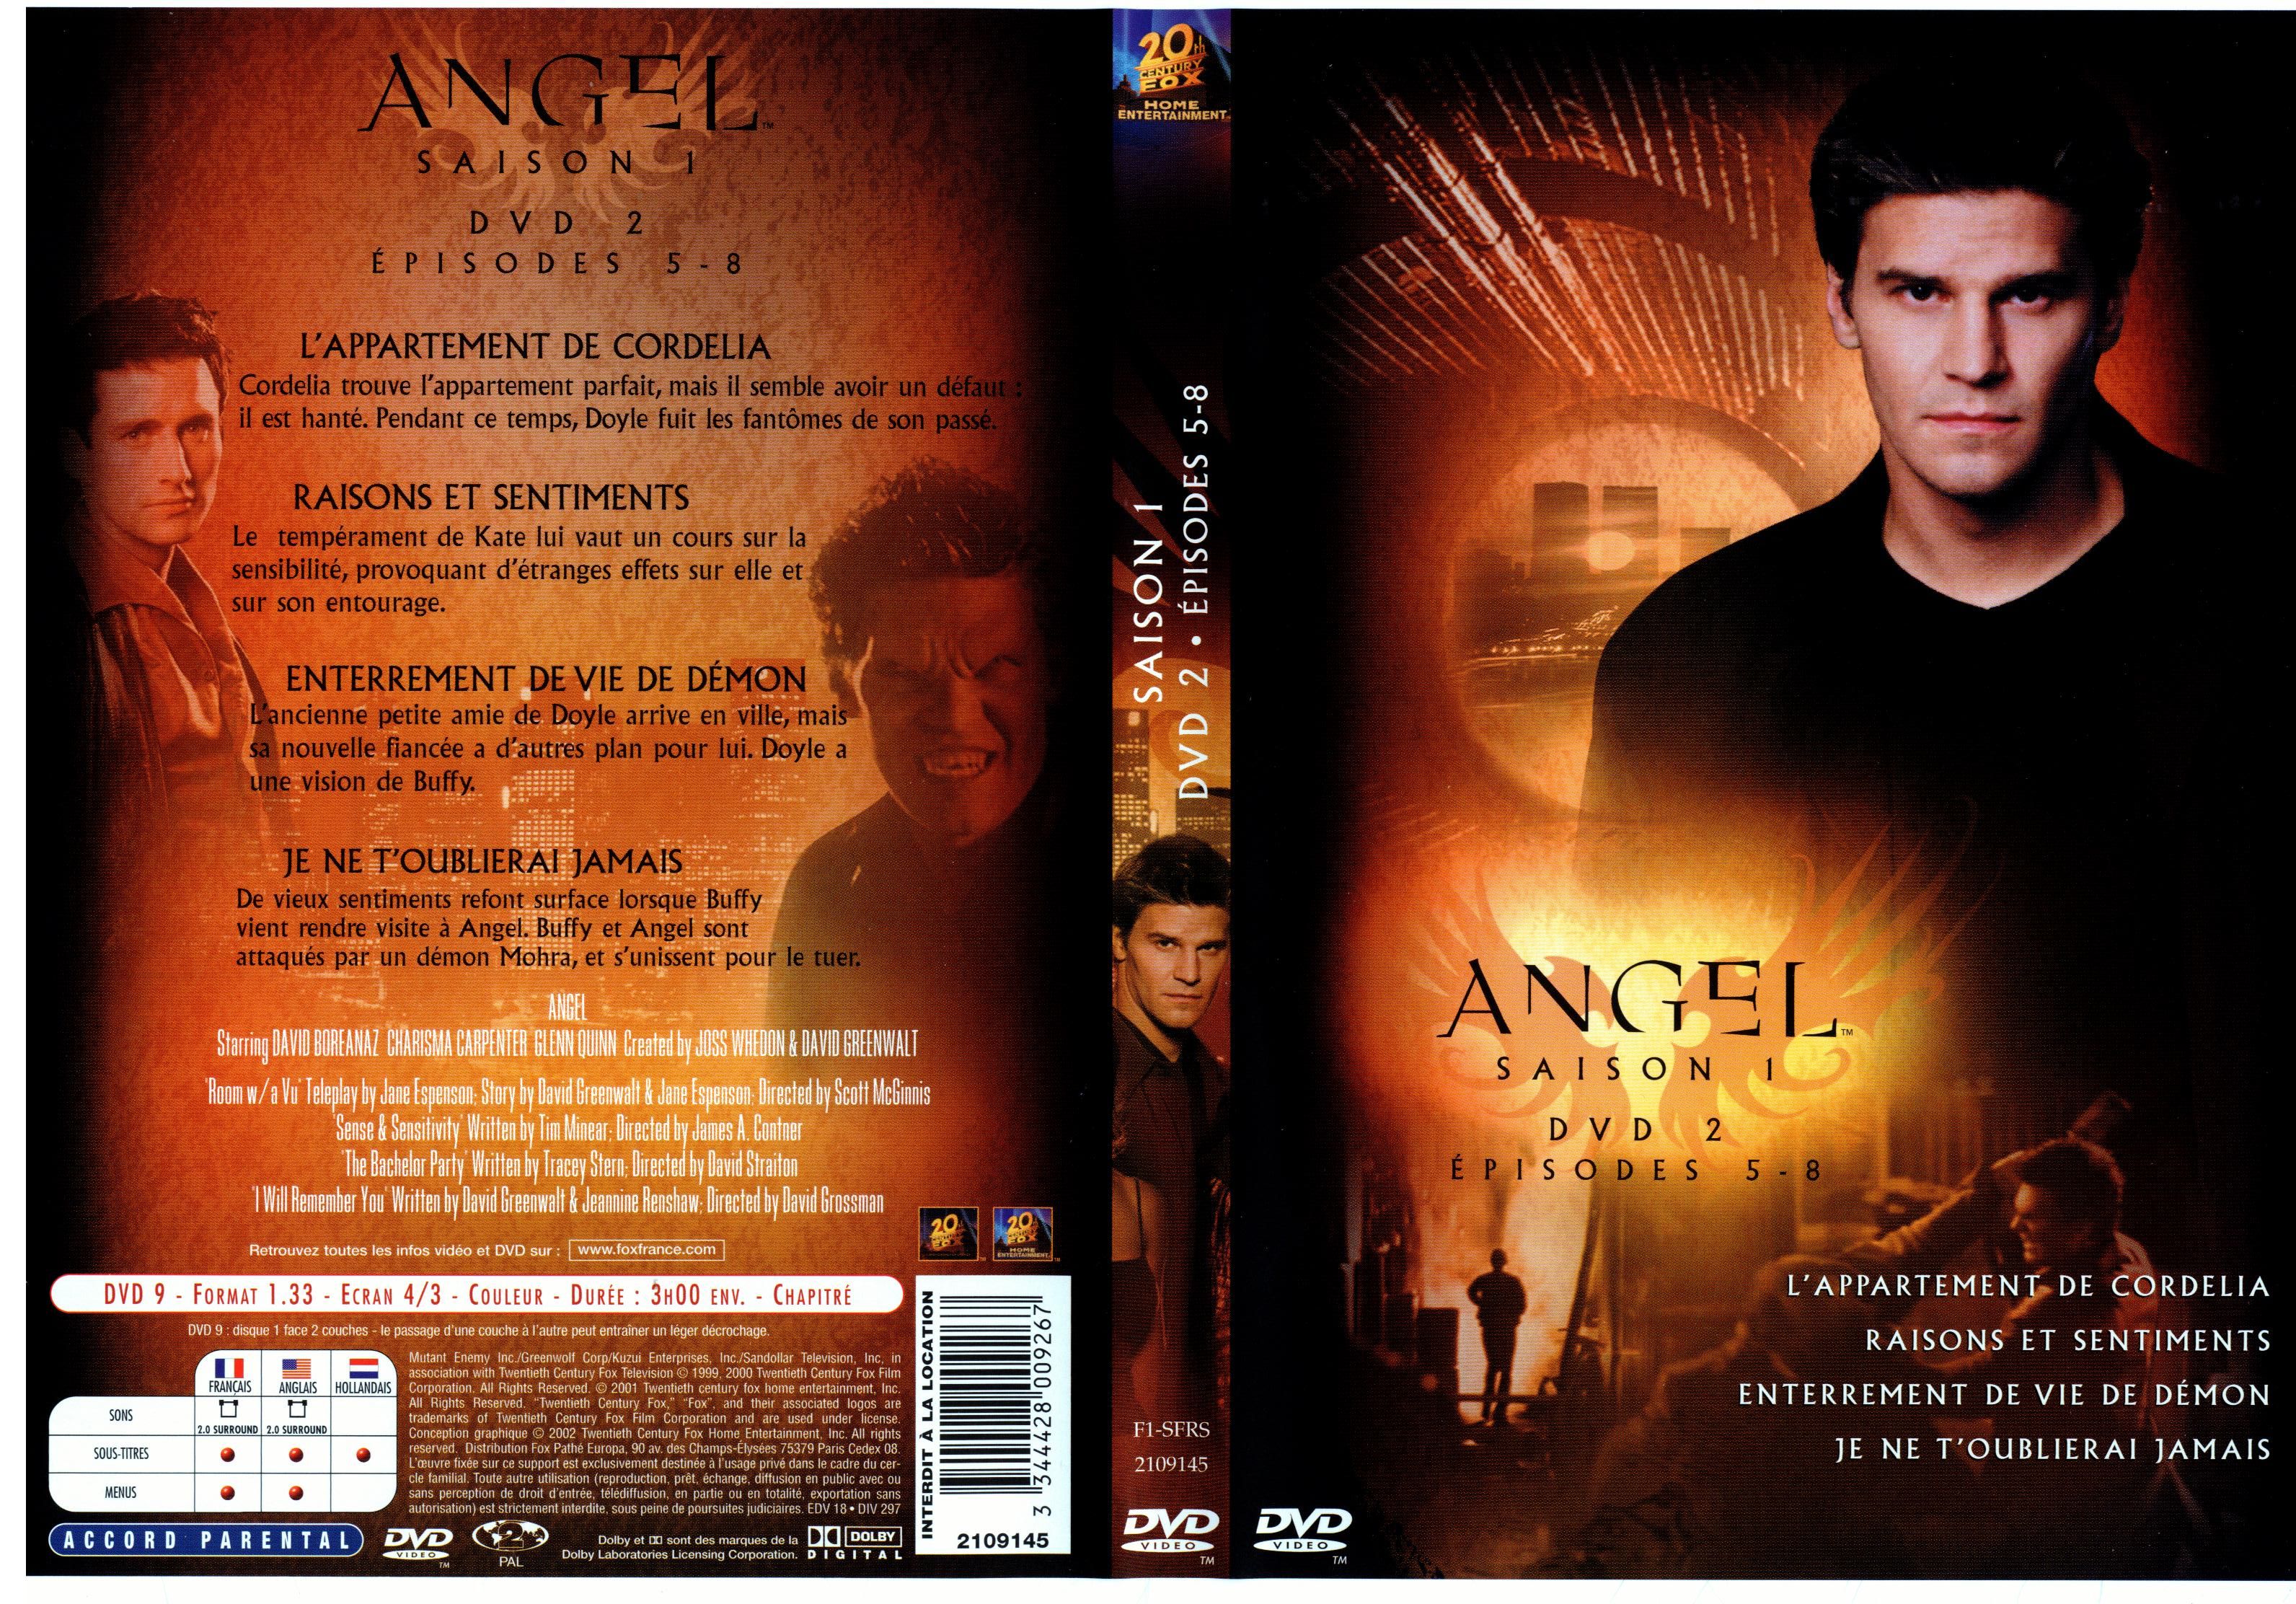 Jaquette DVD Angel Saison 1 dvd 2